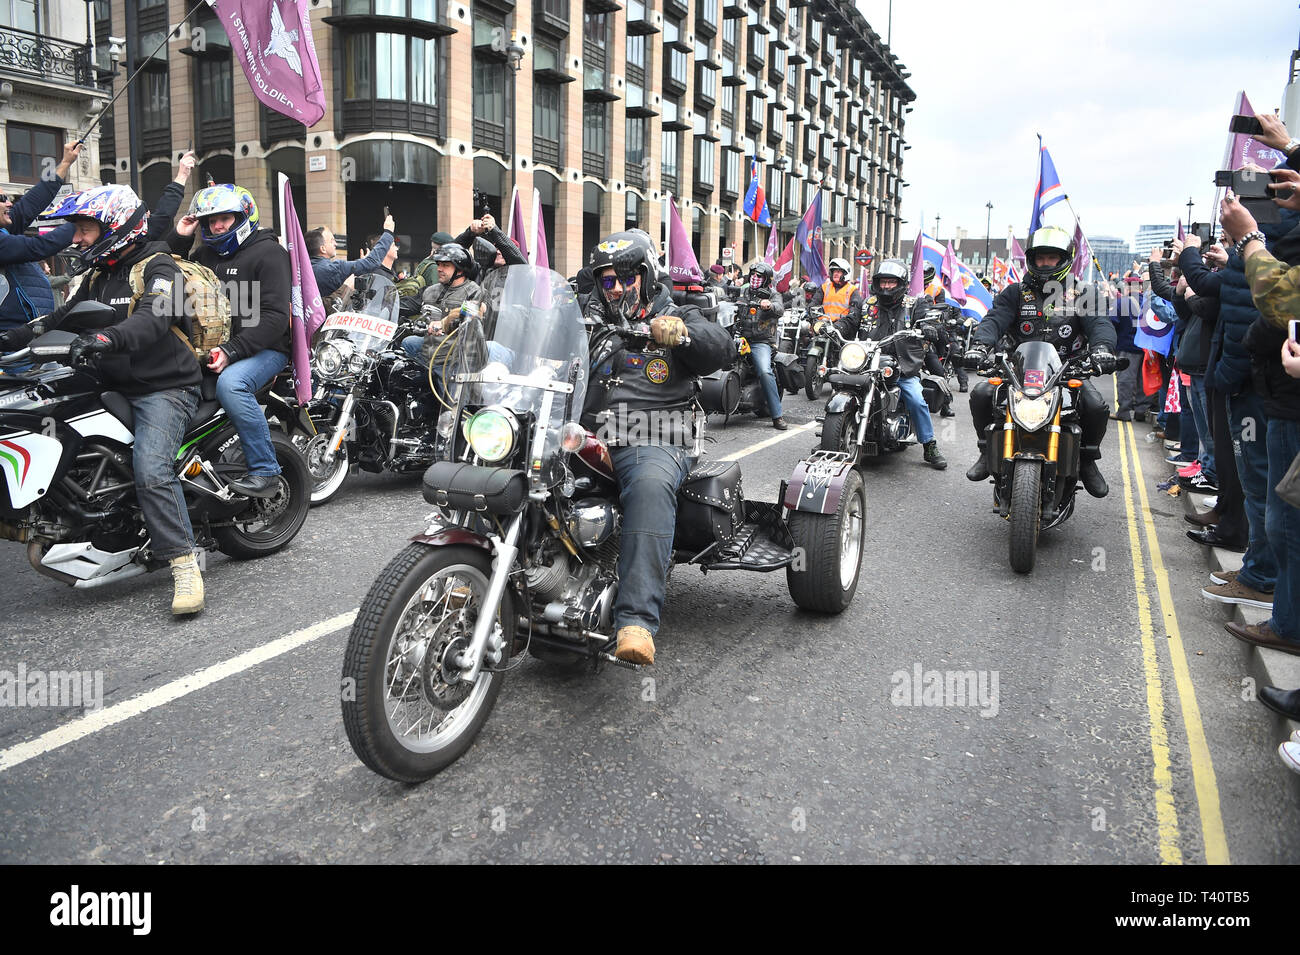 Les motocyclistes prendre part à l'opération Rolling Thunder ride protester d'arriver à la place du Parlement, Londres, à l'appui de F soldat qui fait face à des poursuites sur le Dimanche sanglant. Banque D'Images